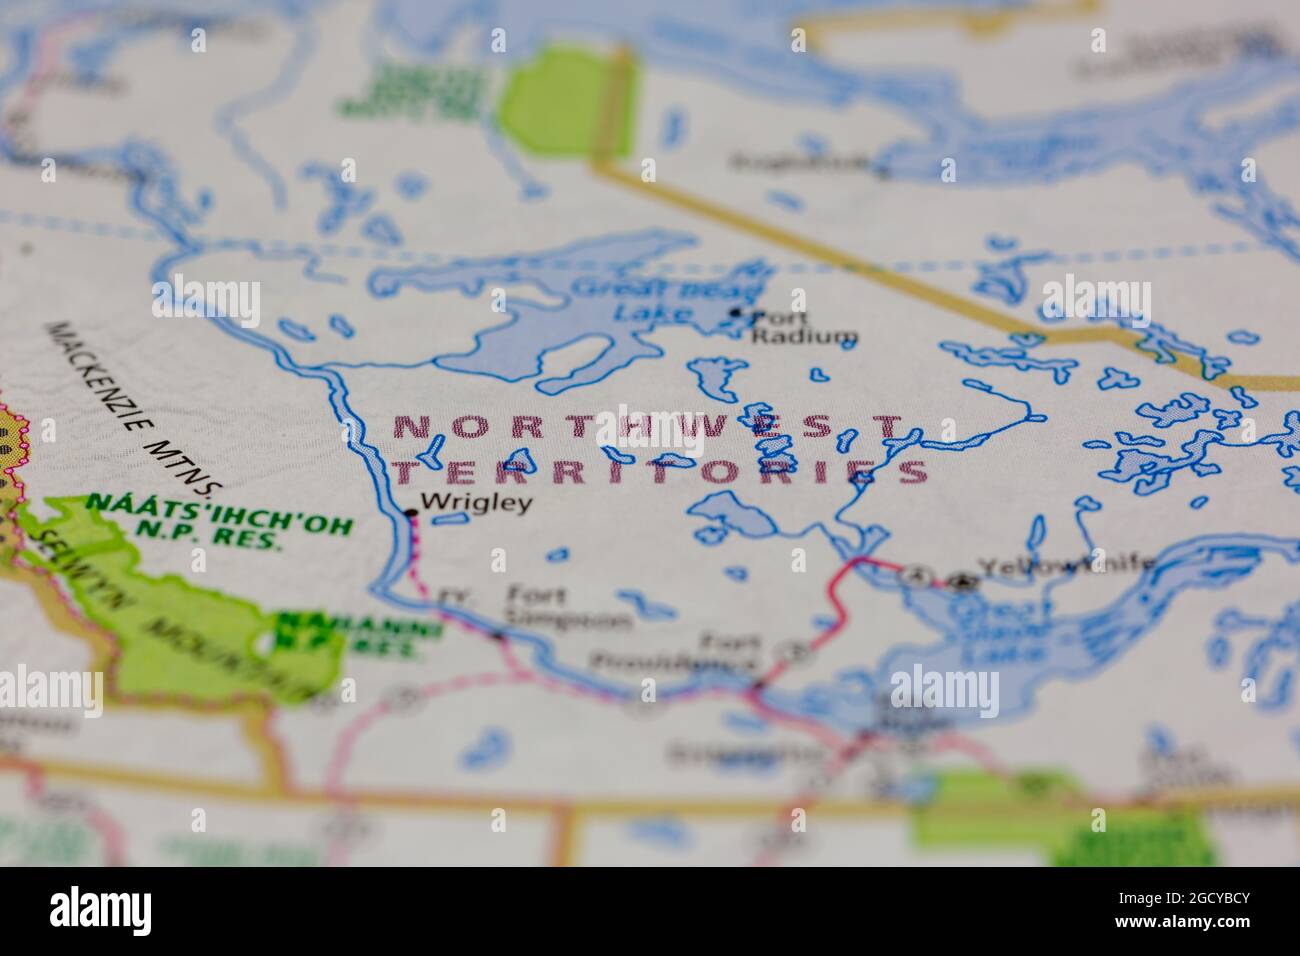 Nordwest-Territorien Kanada auf einer Straßenkarte oder Geografie-Karte angezeigt Stockfoto